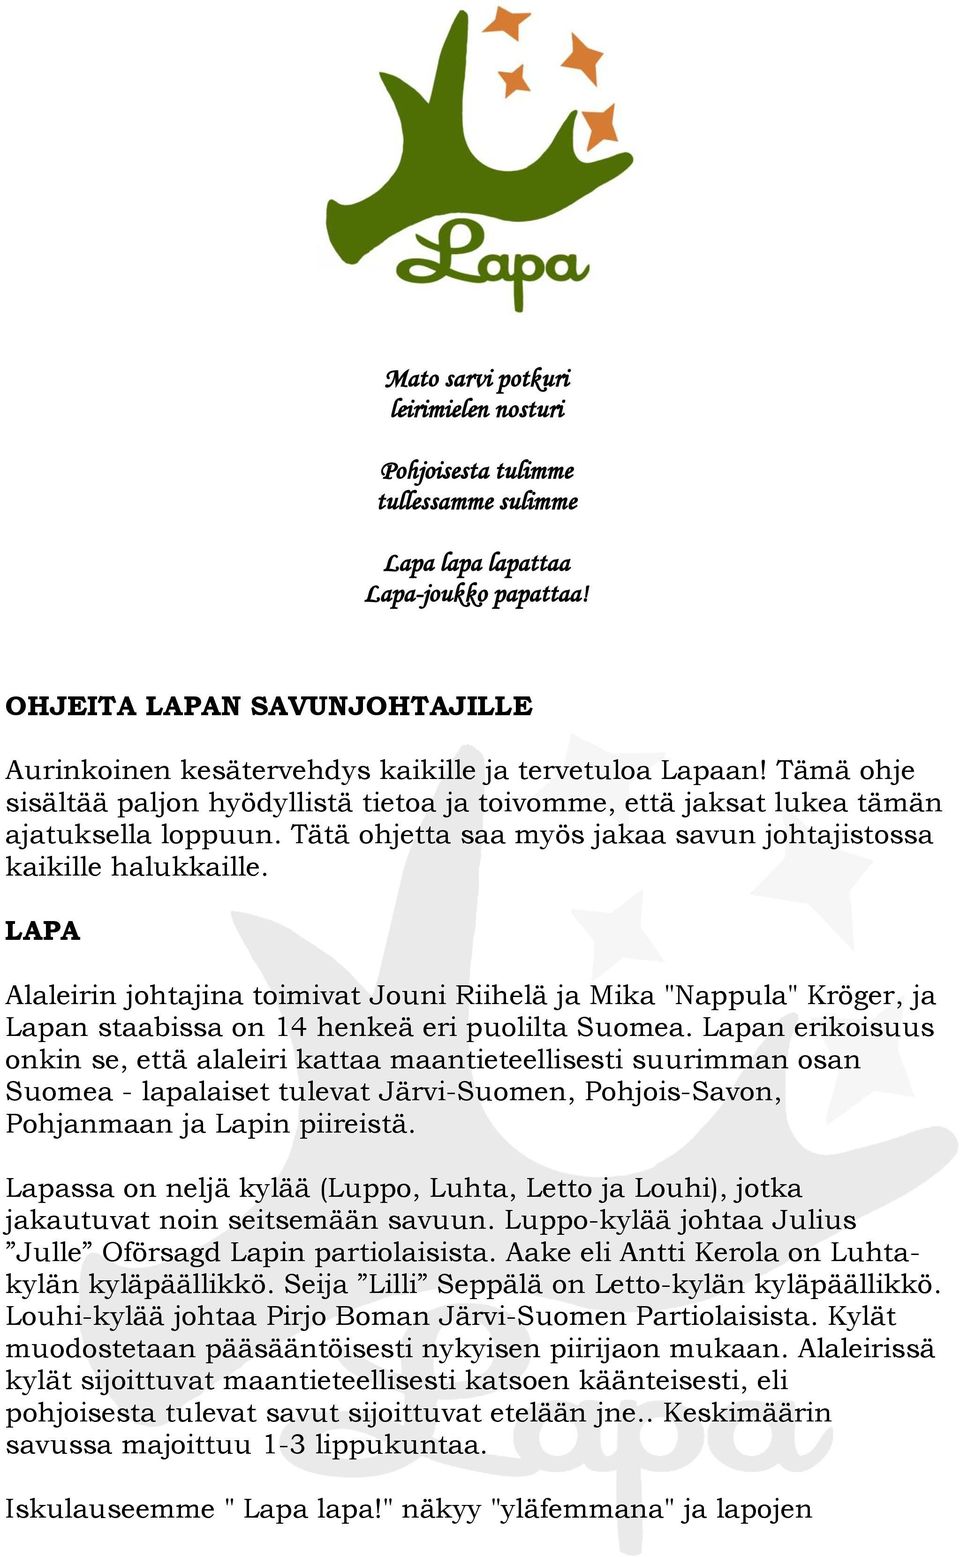 Tätä ohjetta saa myös jakaa savun johtajistossa kaikille halukkaille. LAPA Alaleirin johtajina toimivat Jouni Riihelä ja Mika "Nappula" Kröger, ja Lapan staabissa on 14 henkeä eri puolilta Suomea.